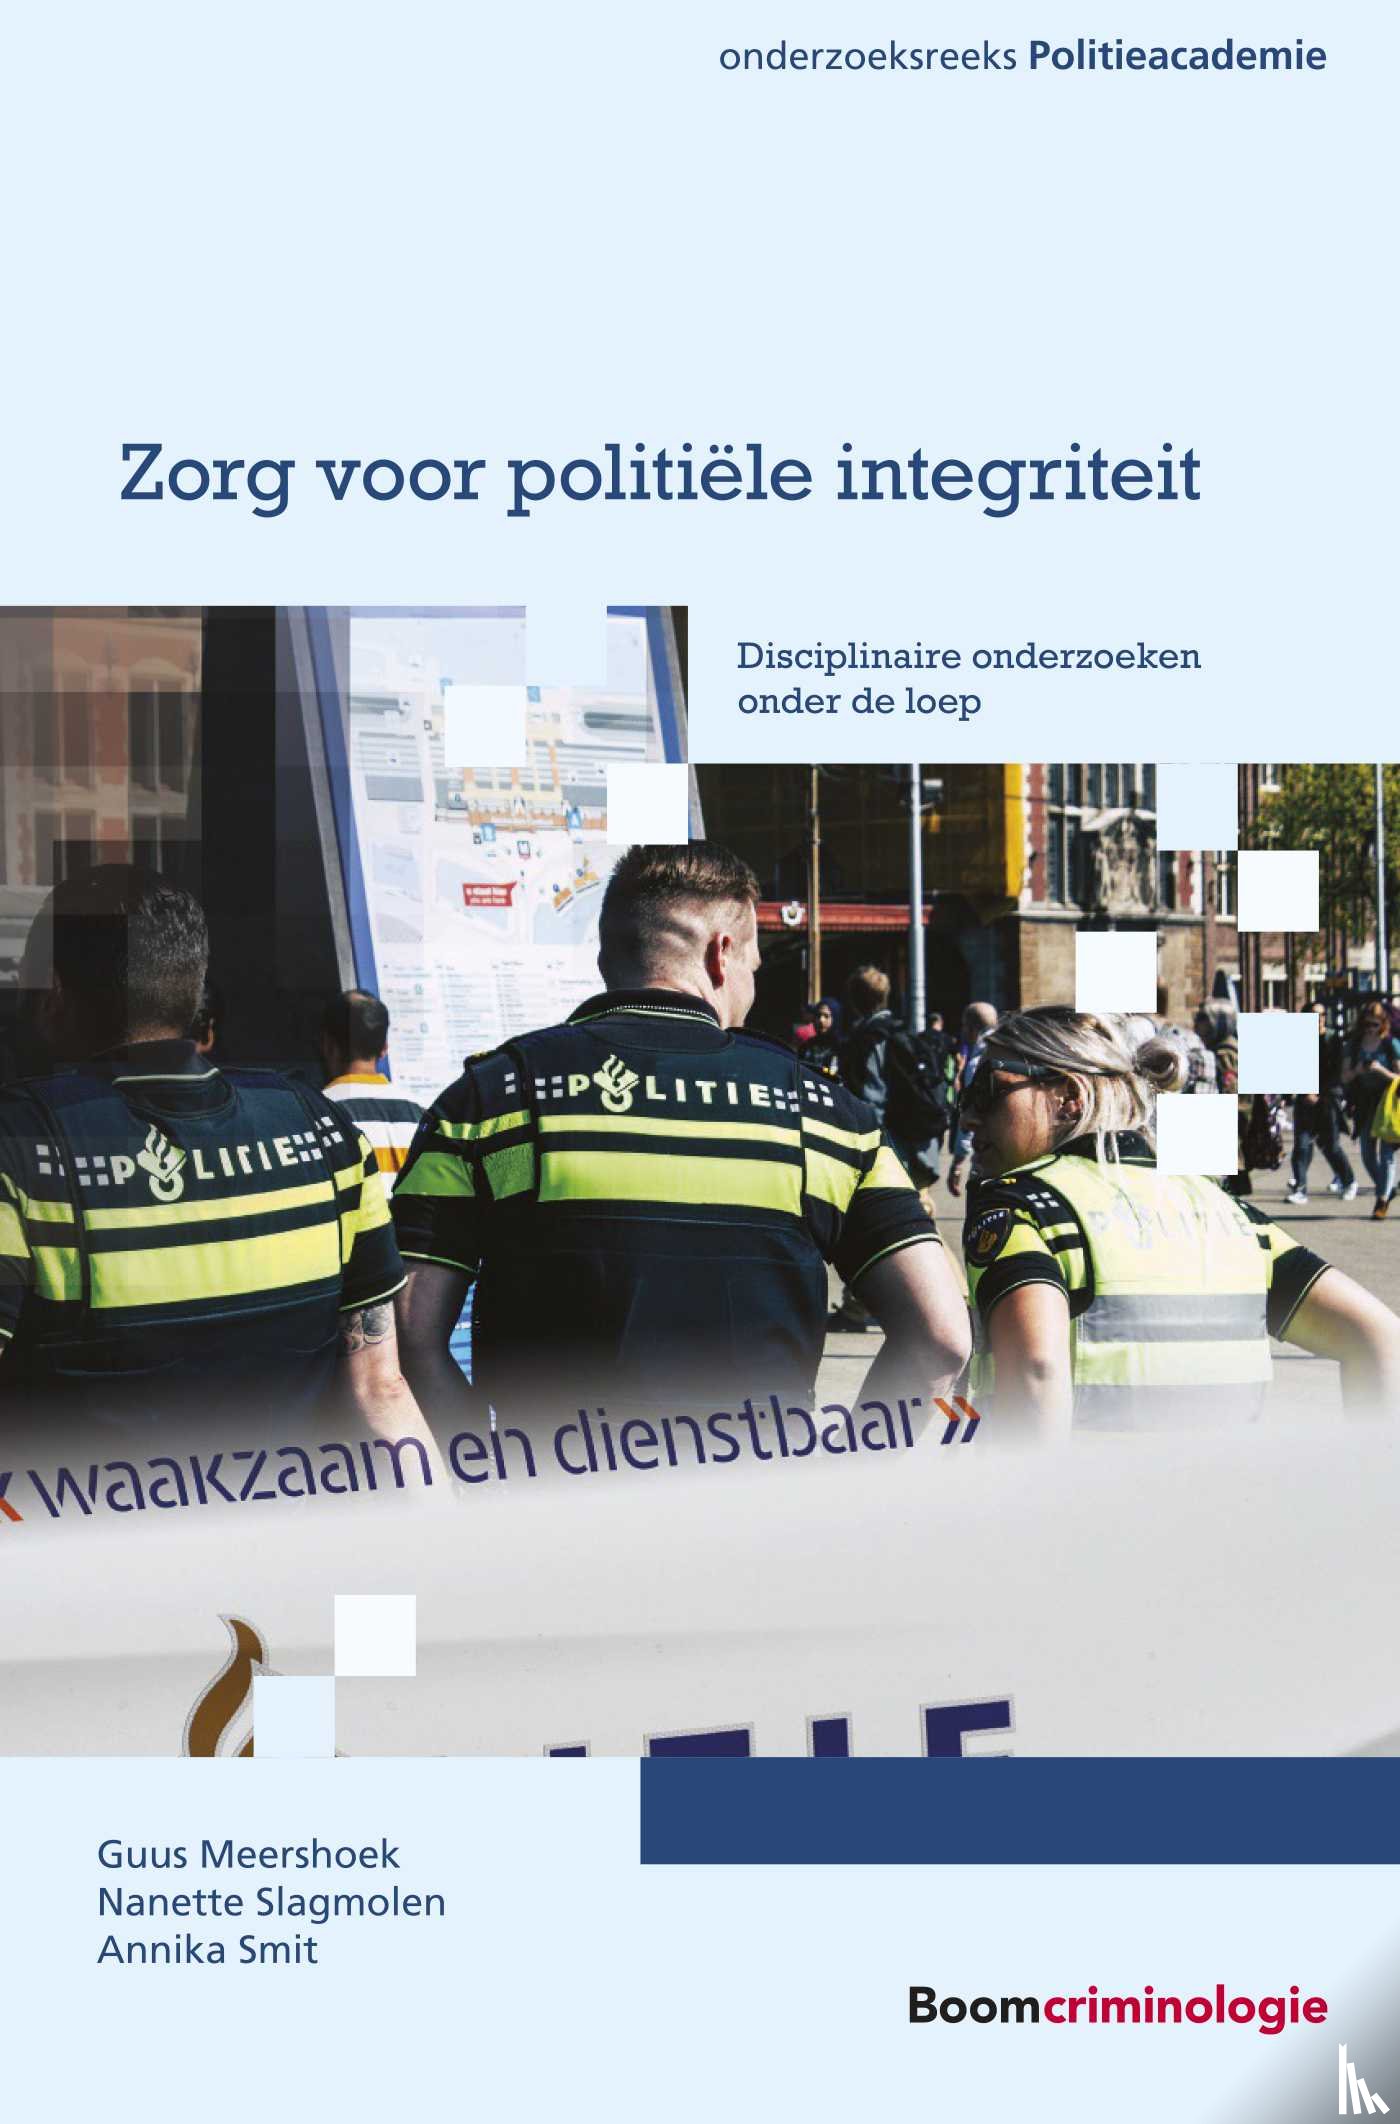 Meershoek, Guus, Slagmolen, Nanette, Smit, Annika - Zorg voor politiële integriteit